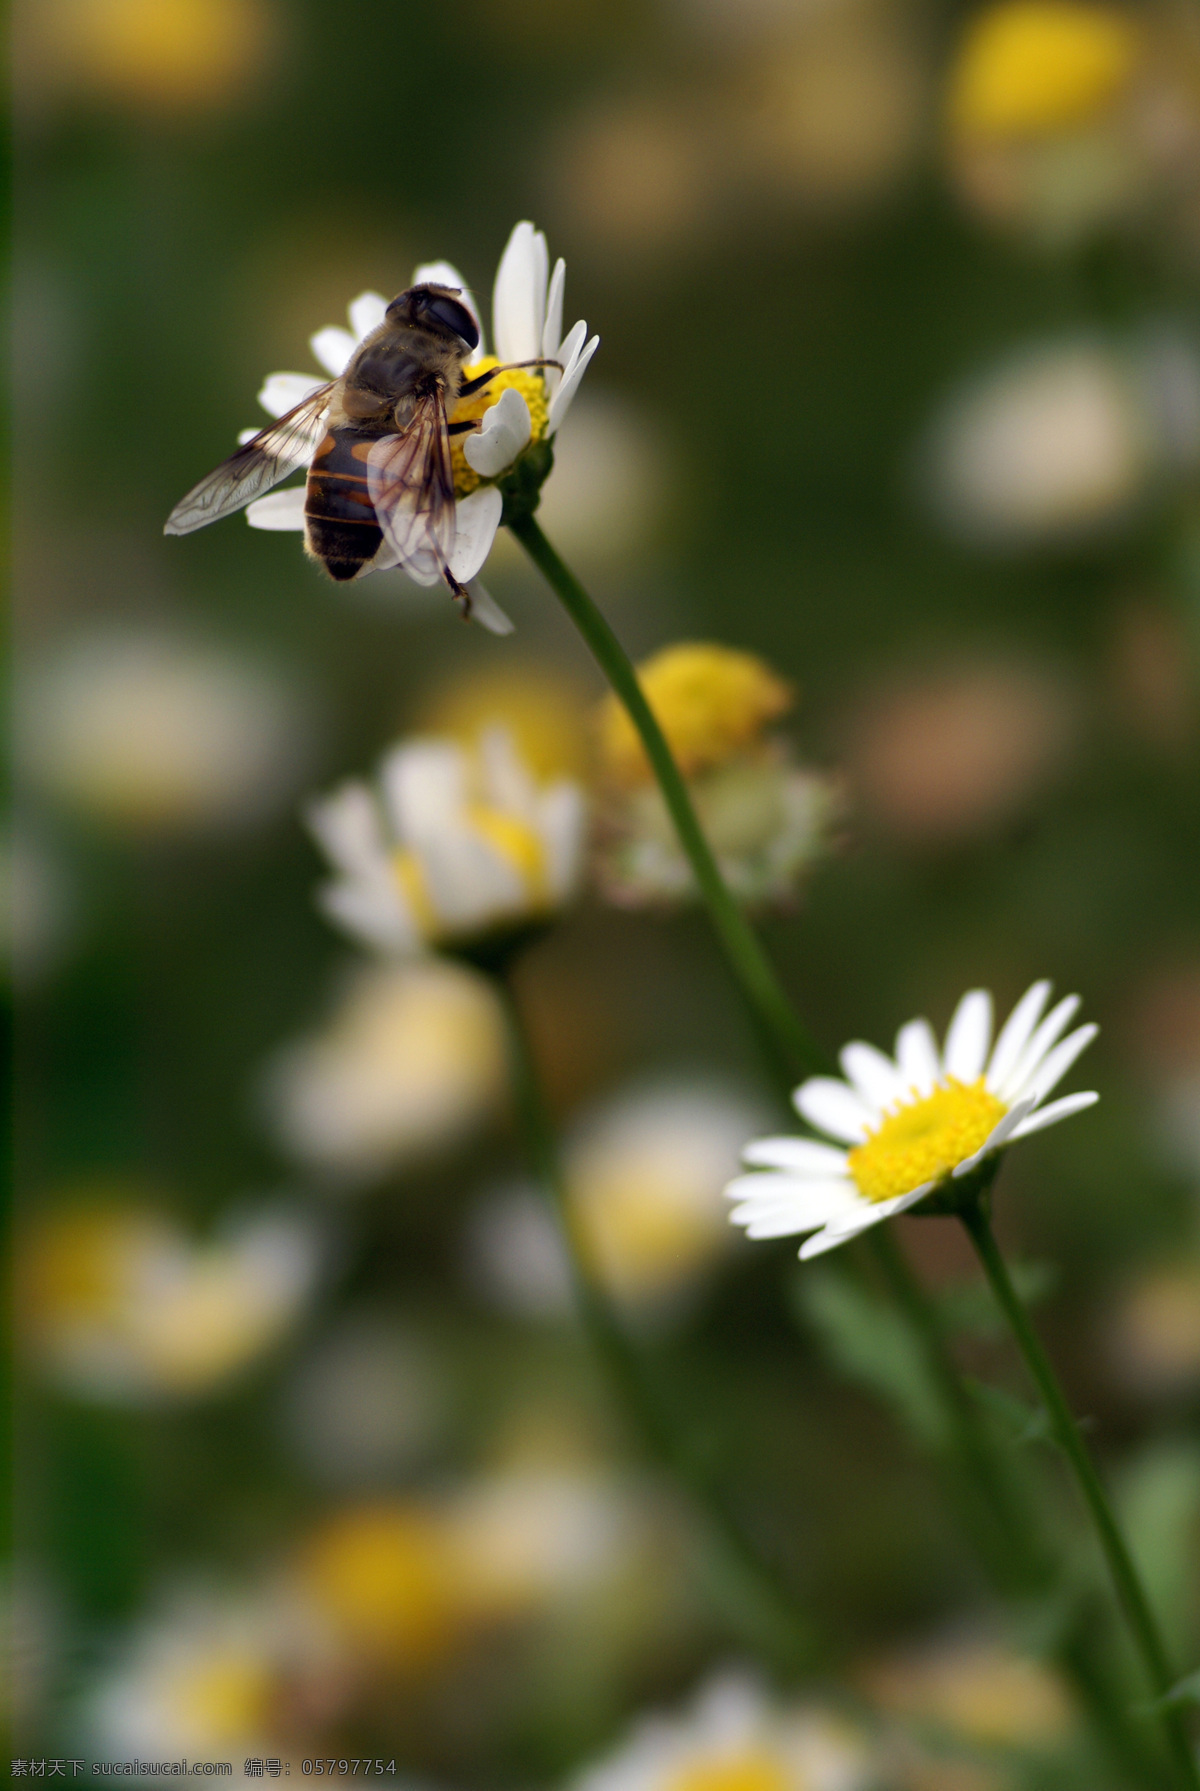 蜜蜂 白色花瓣 翅膀 昆虫 摄影图库 生物世界 黄色花蕊 采蜜 采花大盗 psd源文件